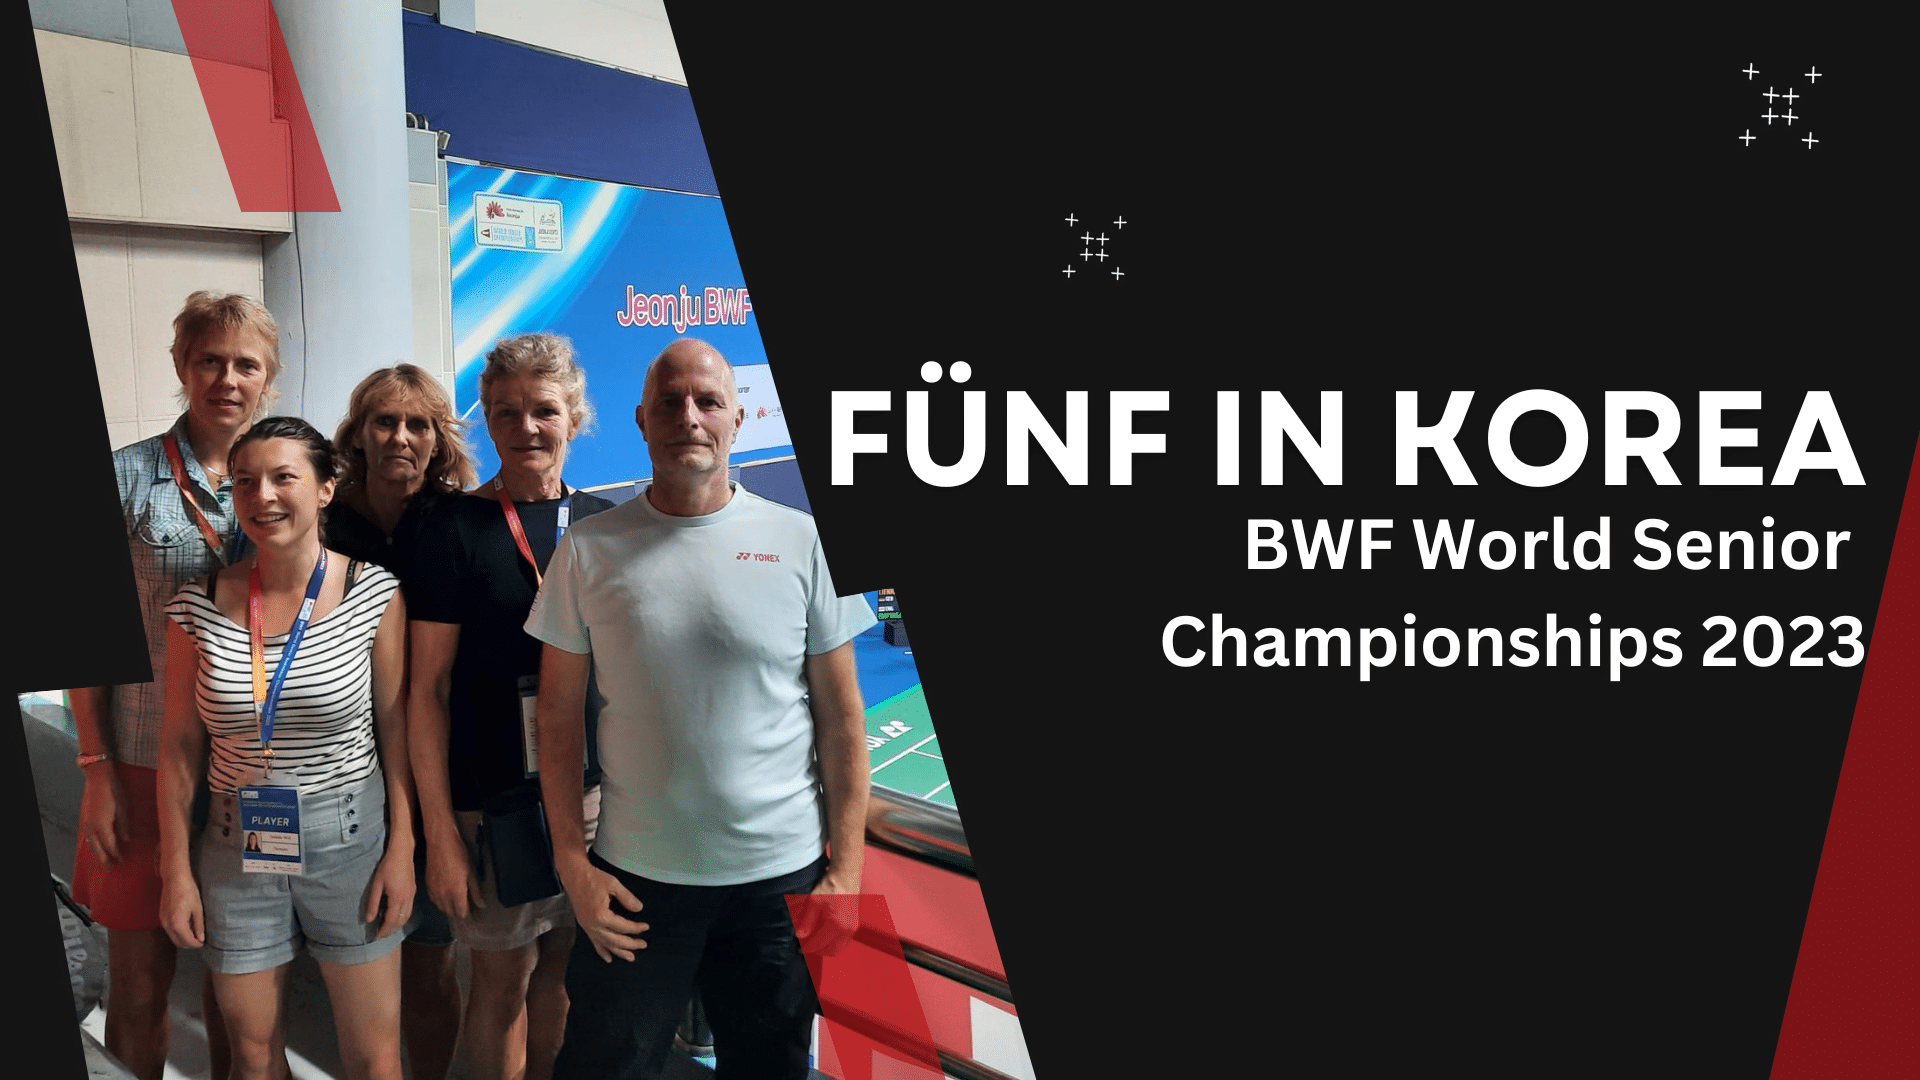 Teilnahme von fünf Berlin-Brandenburger Spieler:innen bei den BWF World Senior Championships 2023 in Korea